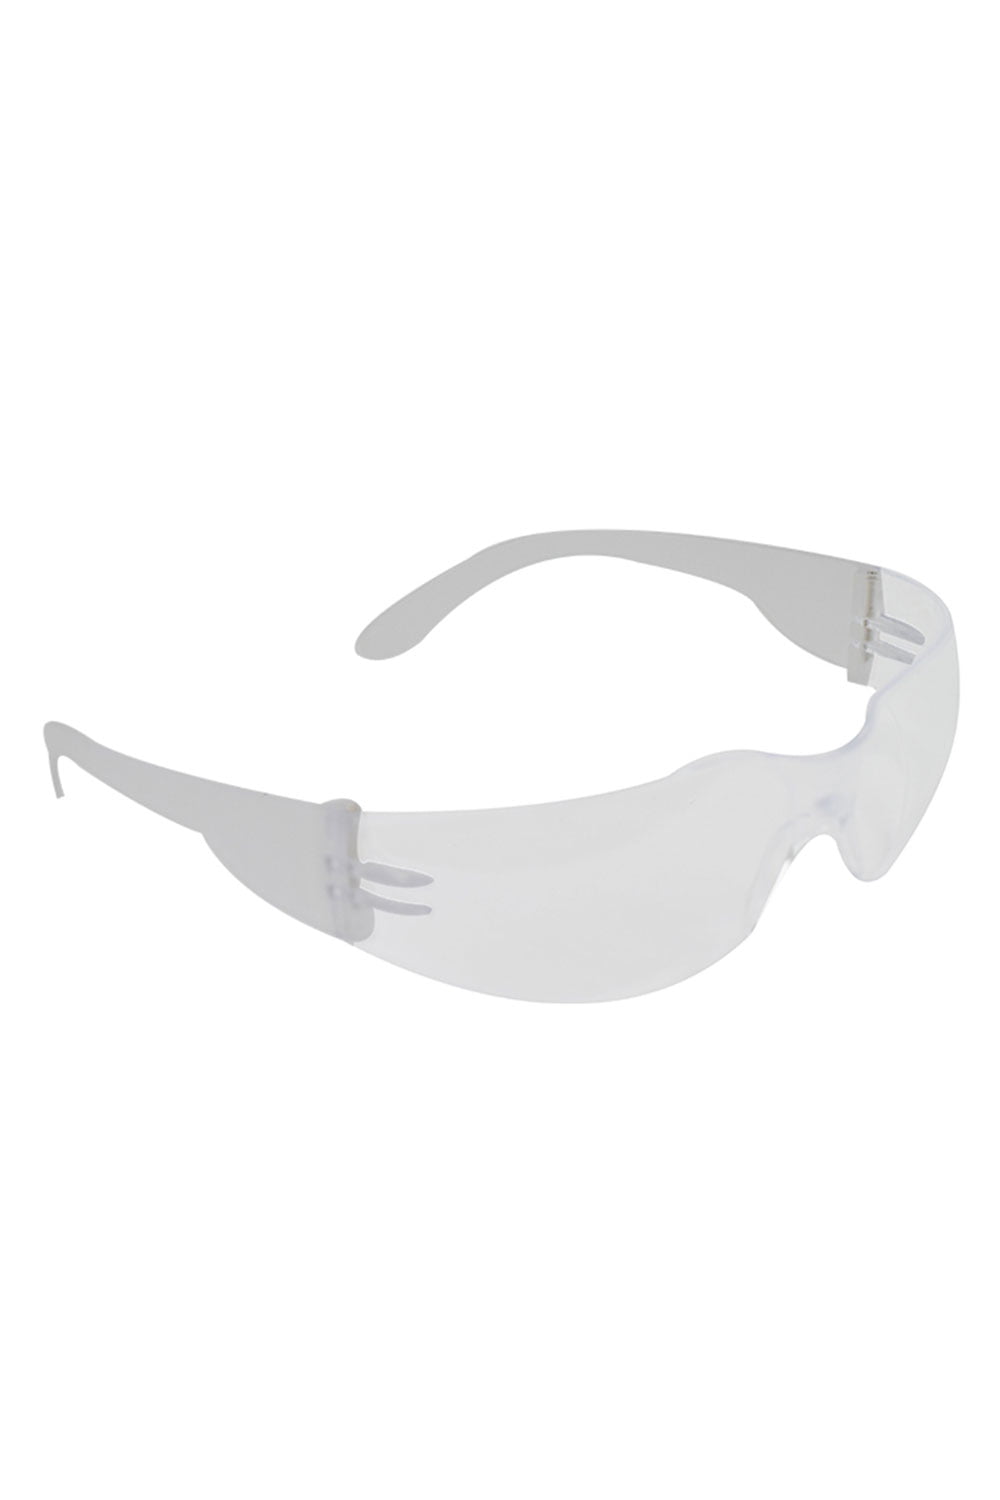 Óculos de proteção formato Leopardo - Estek - Óculos Protetores - Estek | Site Oficial